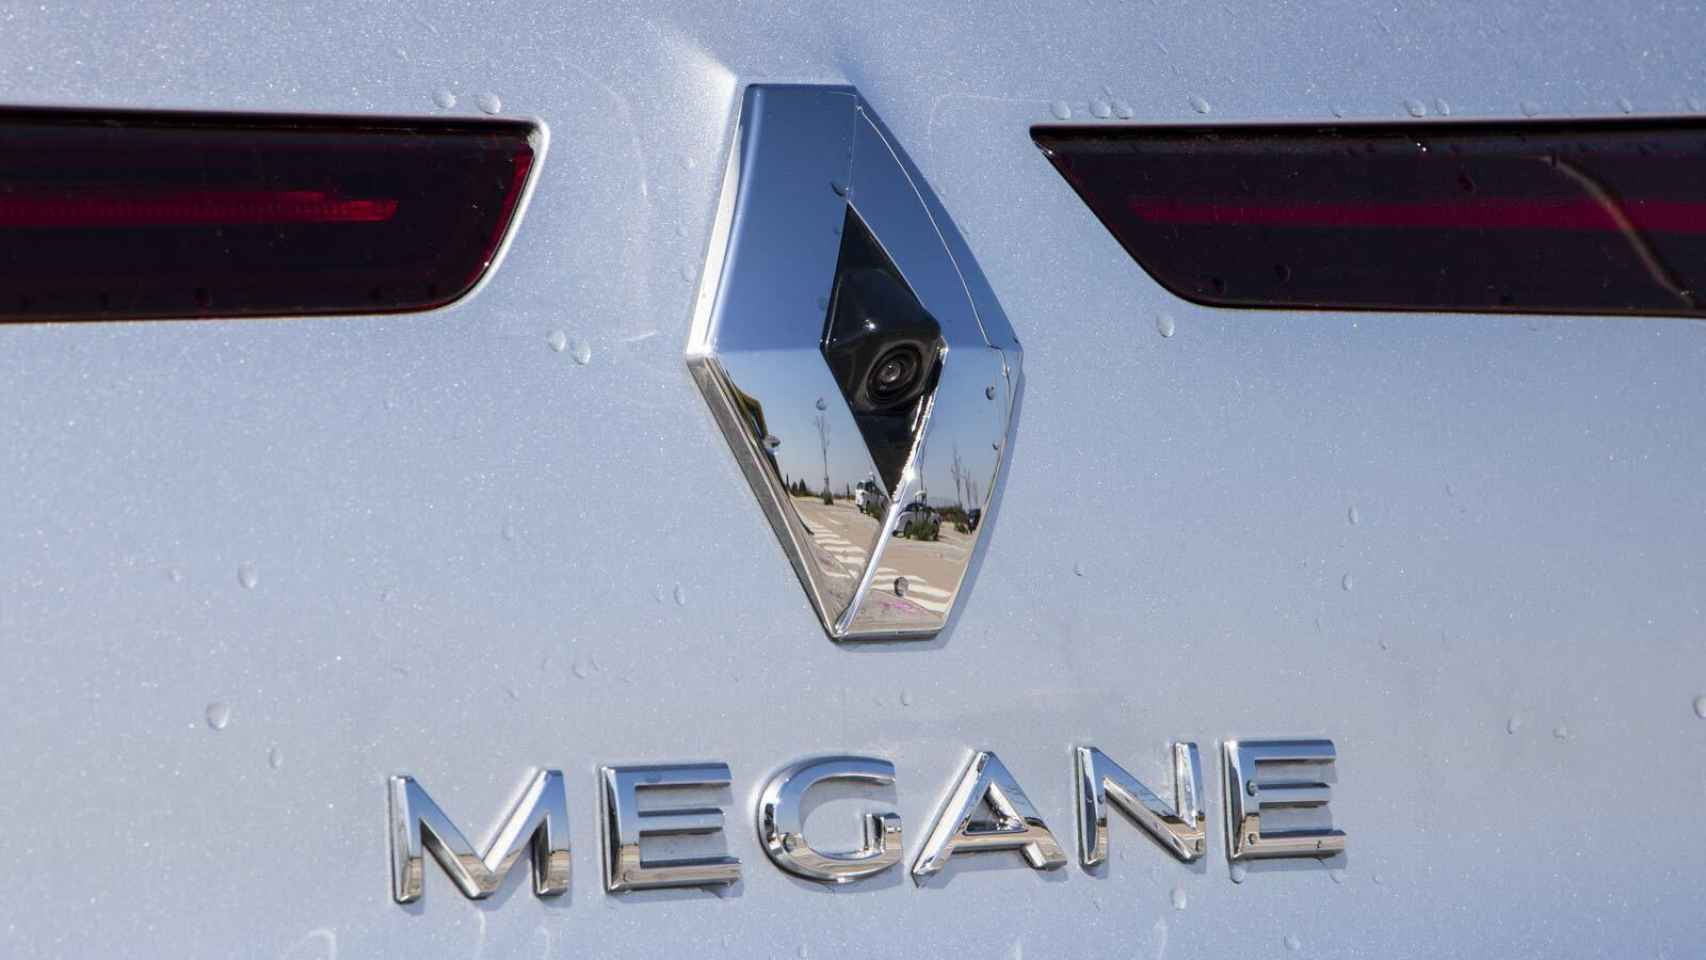 Trasera del Renault Mégane.